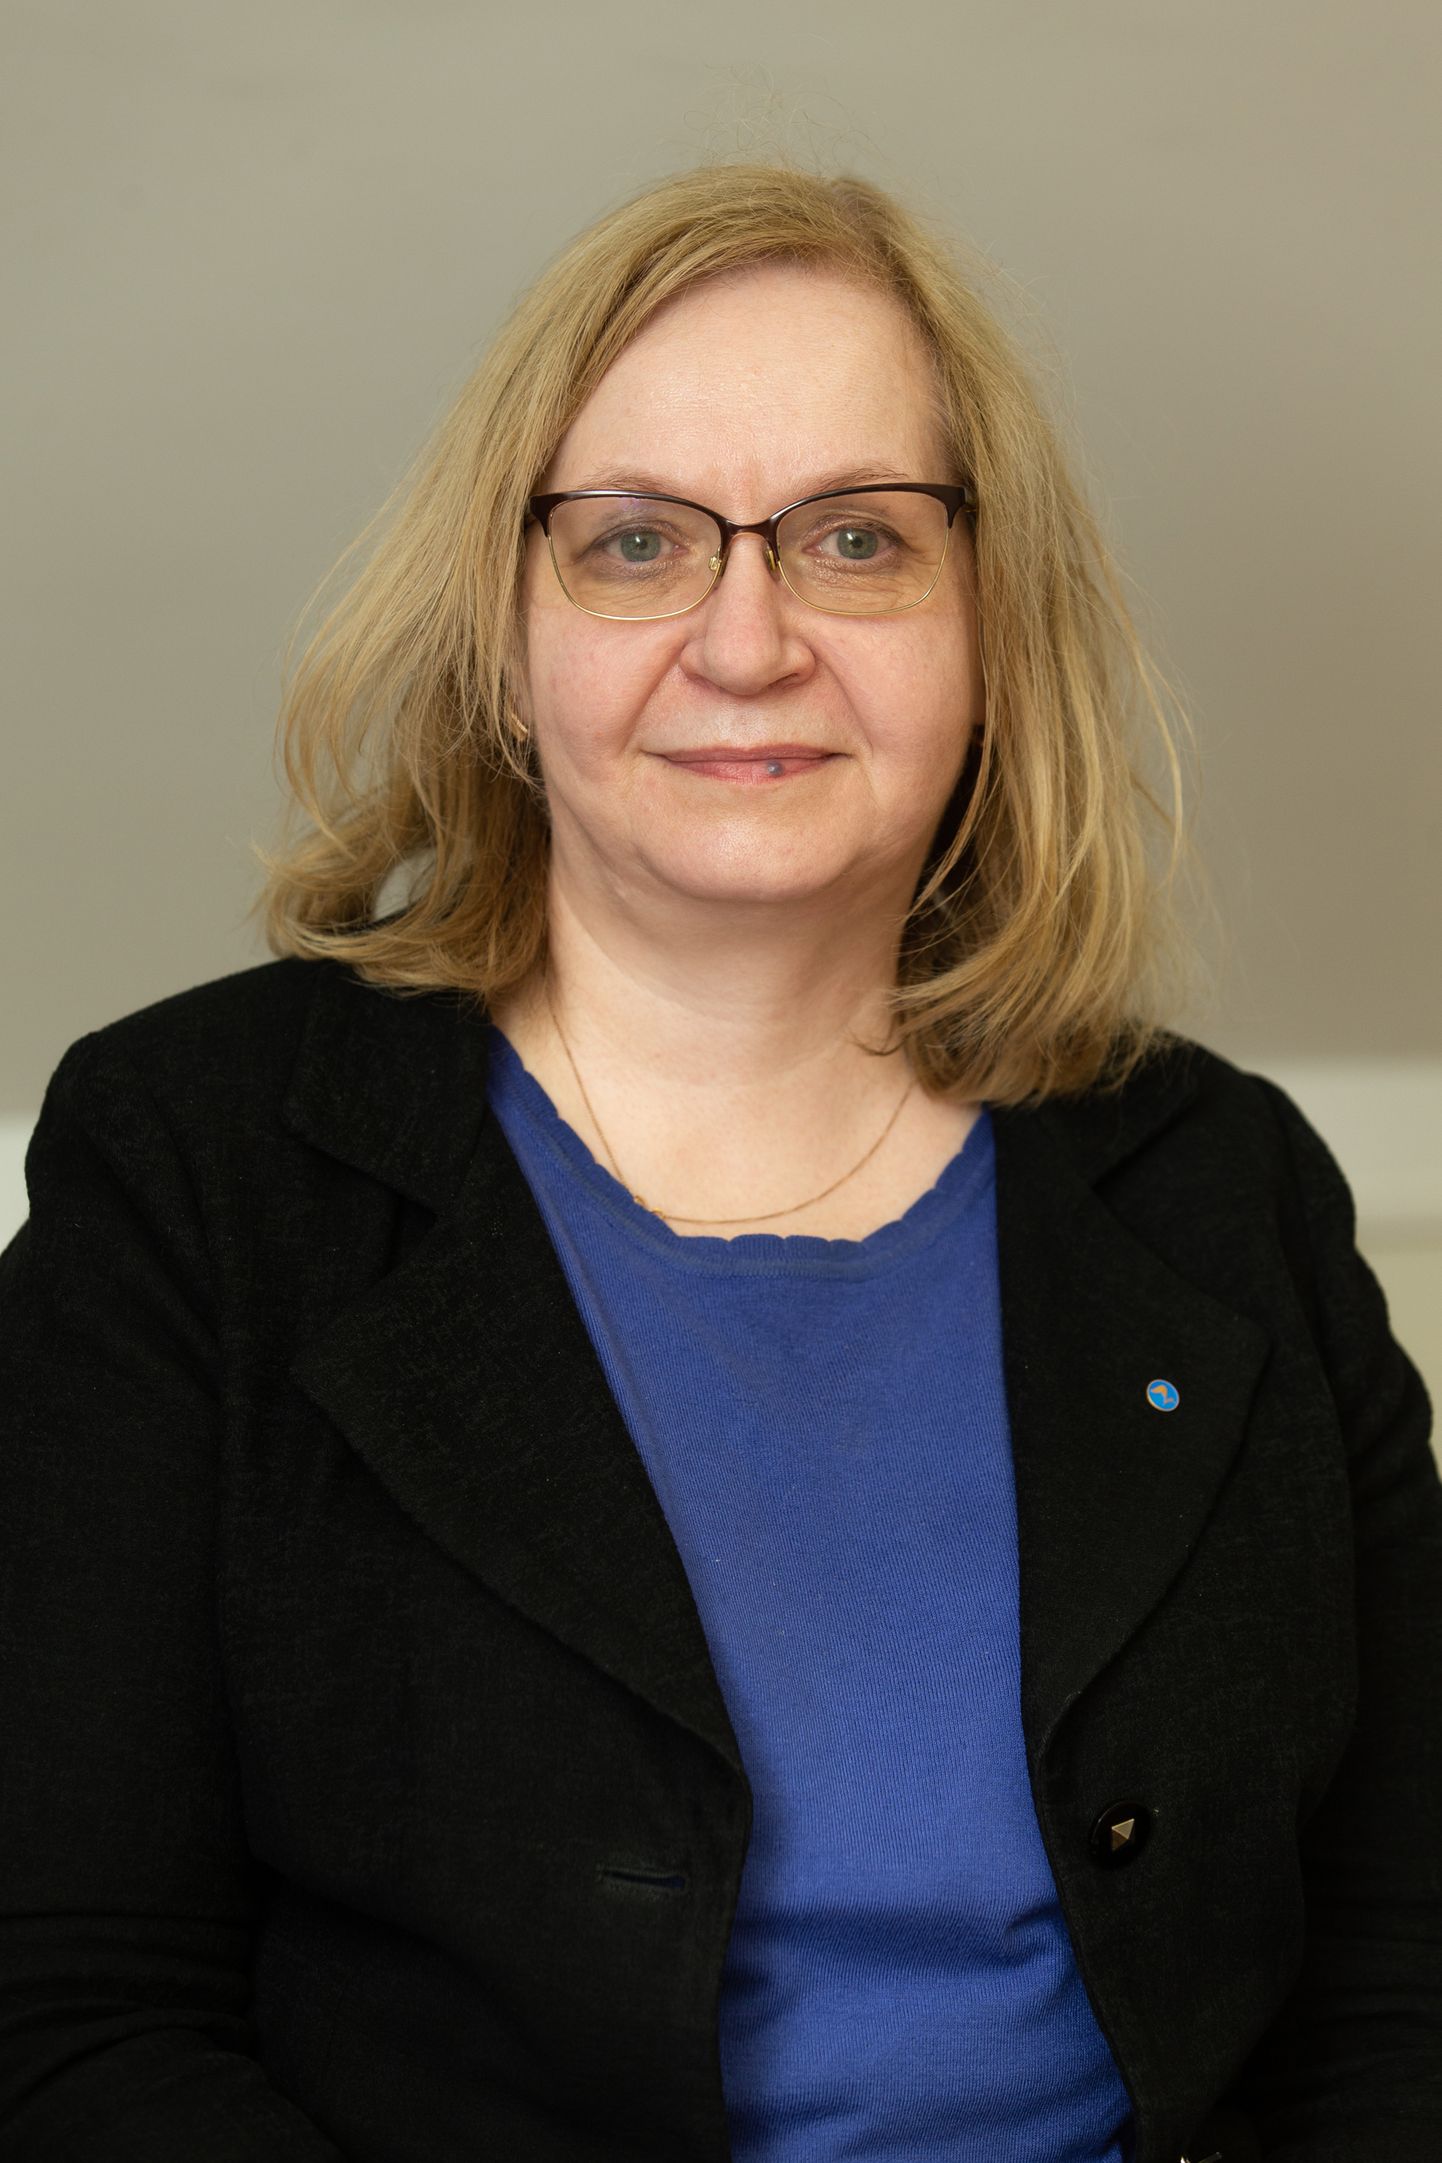 Марис Лаури, министр юстиции, Партия реформ